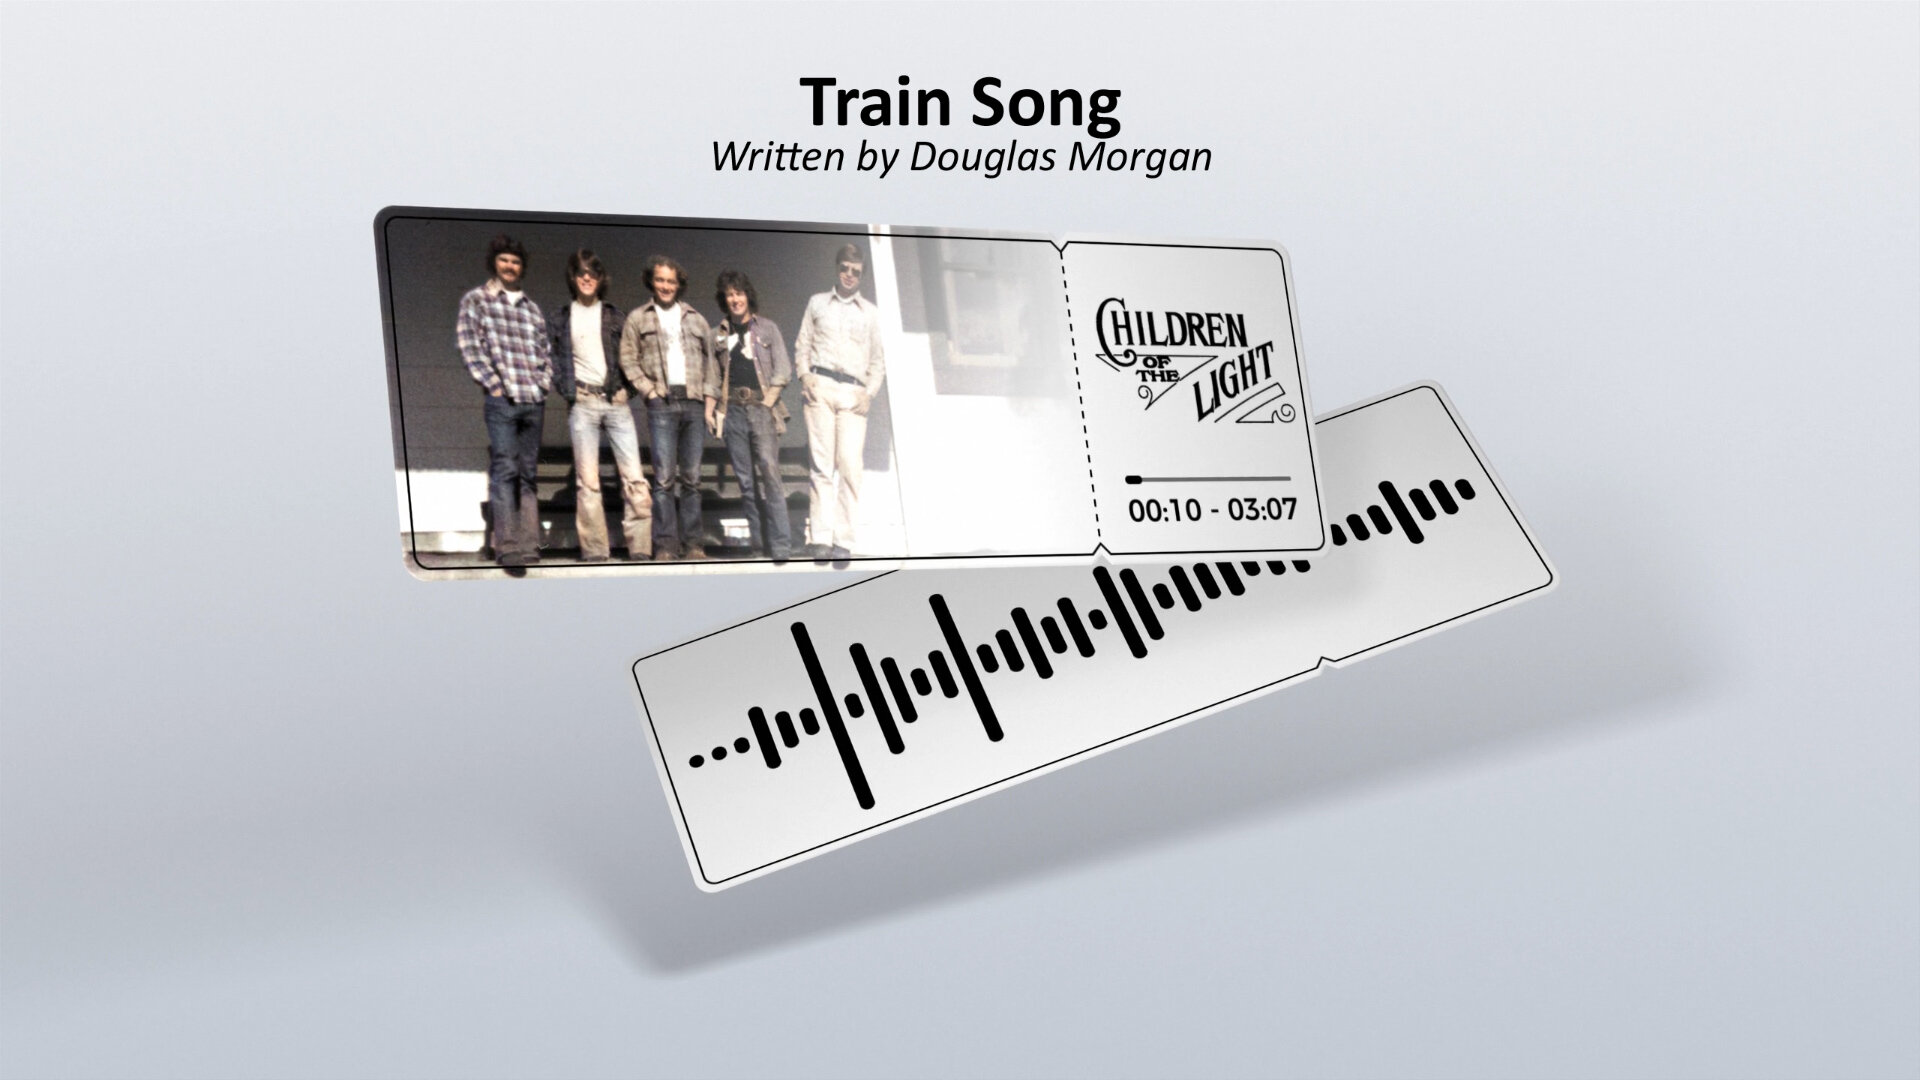 Train Song - ticket video still.jpg